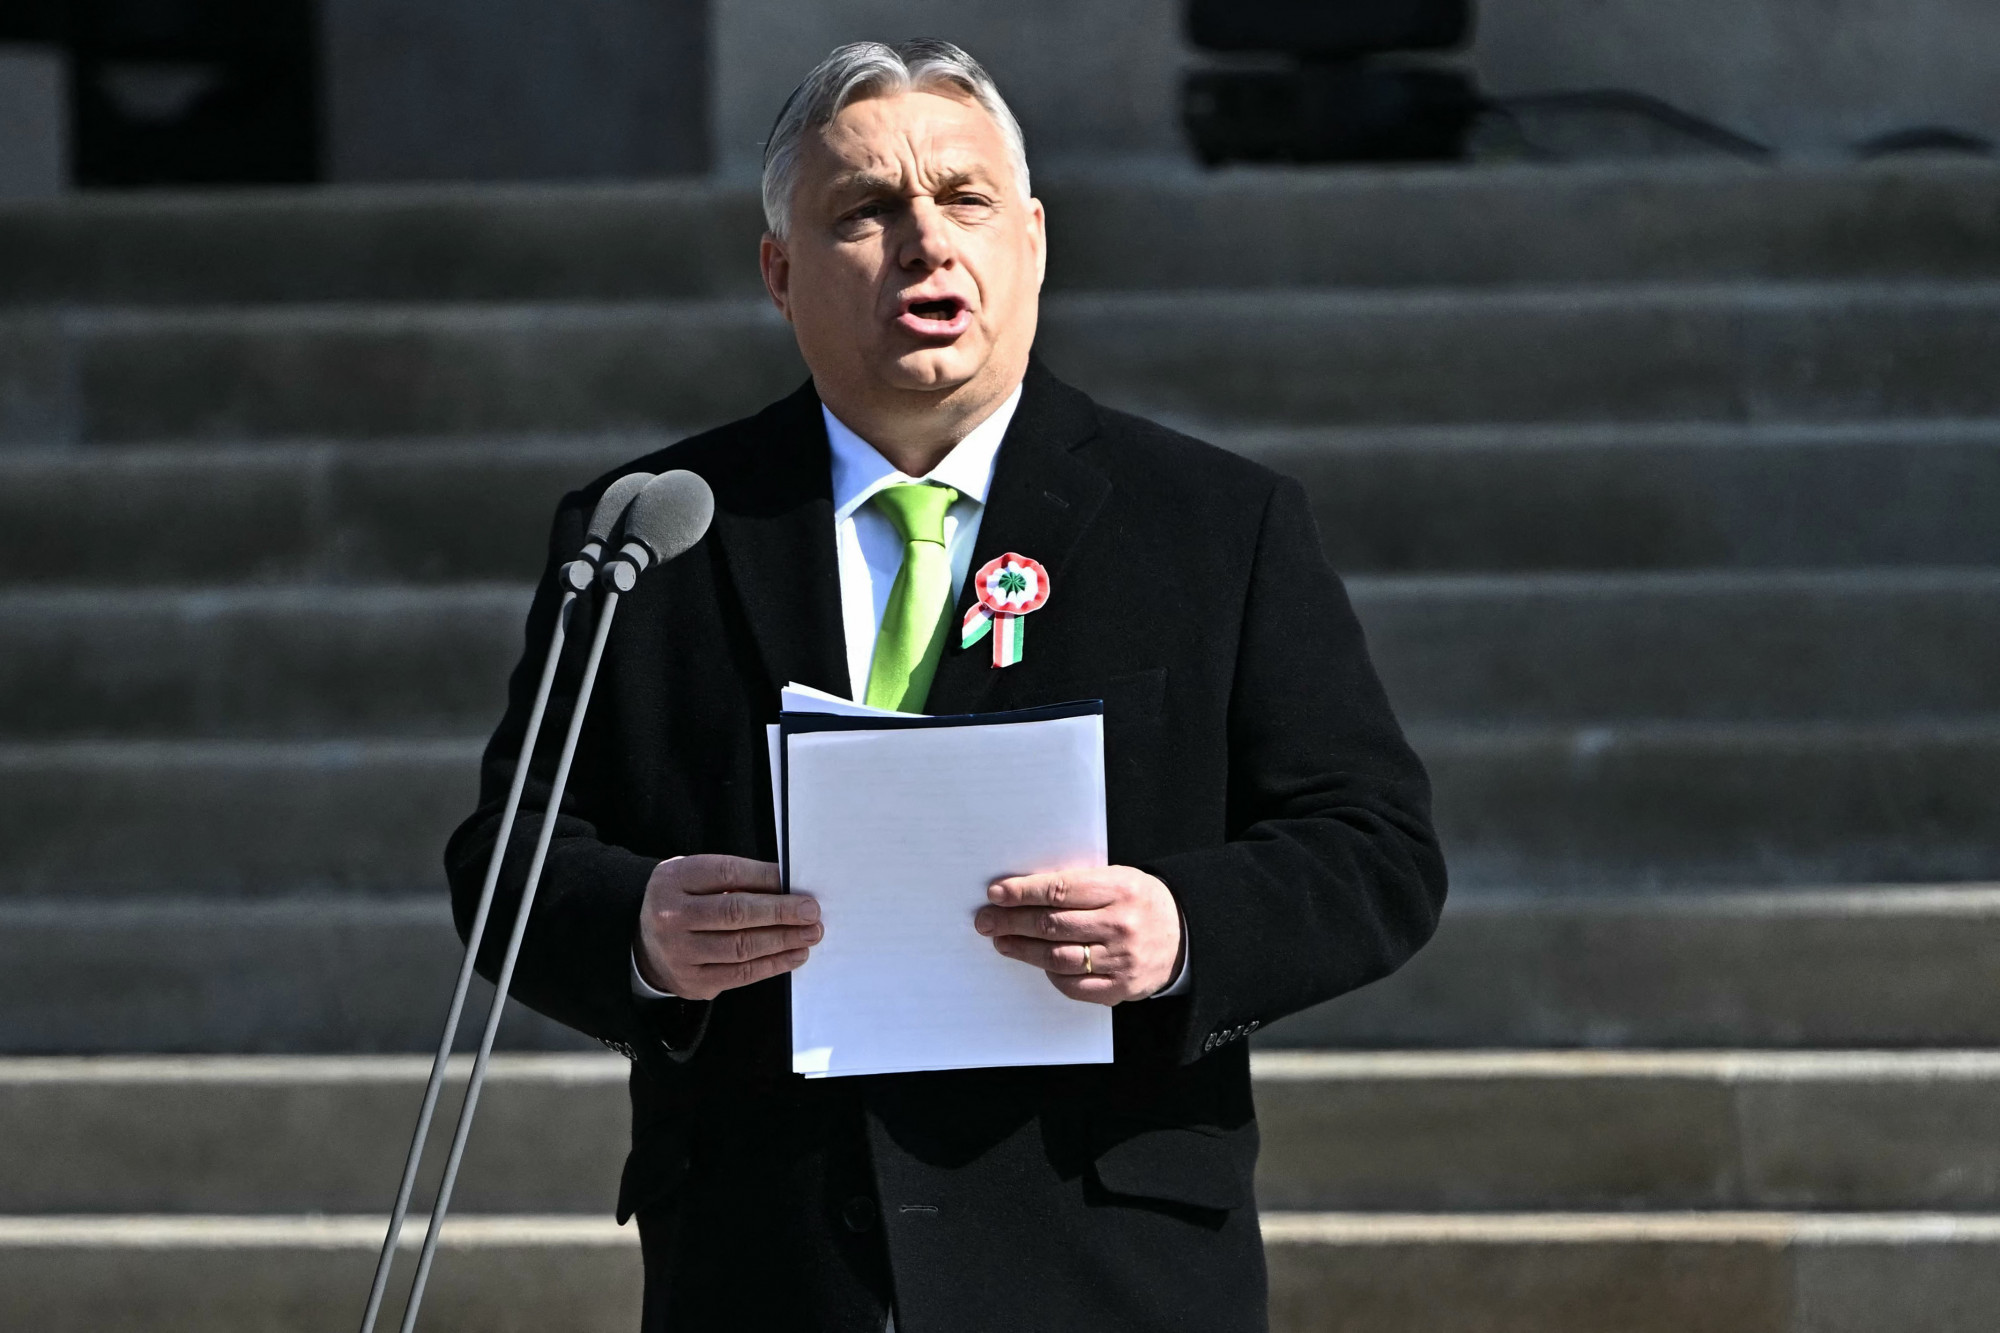 Itt olvasható teljes hosszában Orbán Viktor beszéde